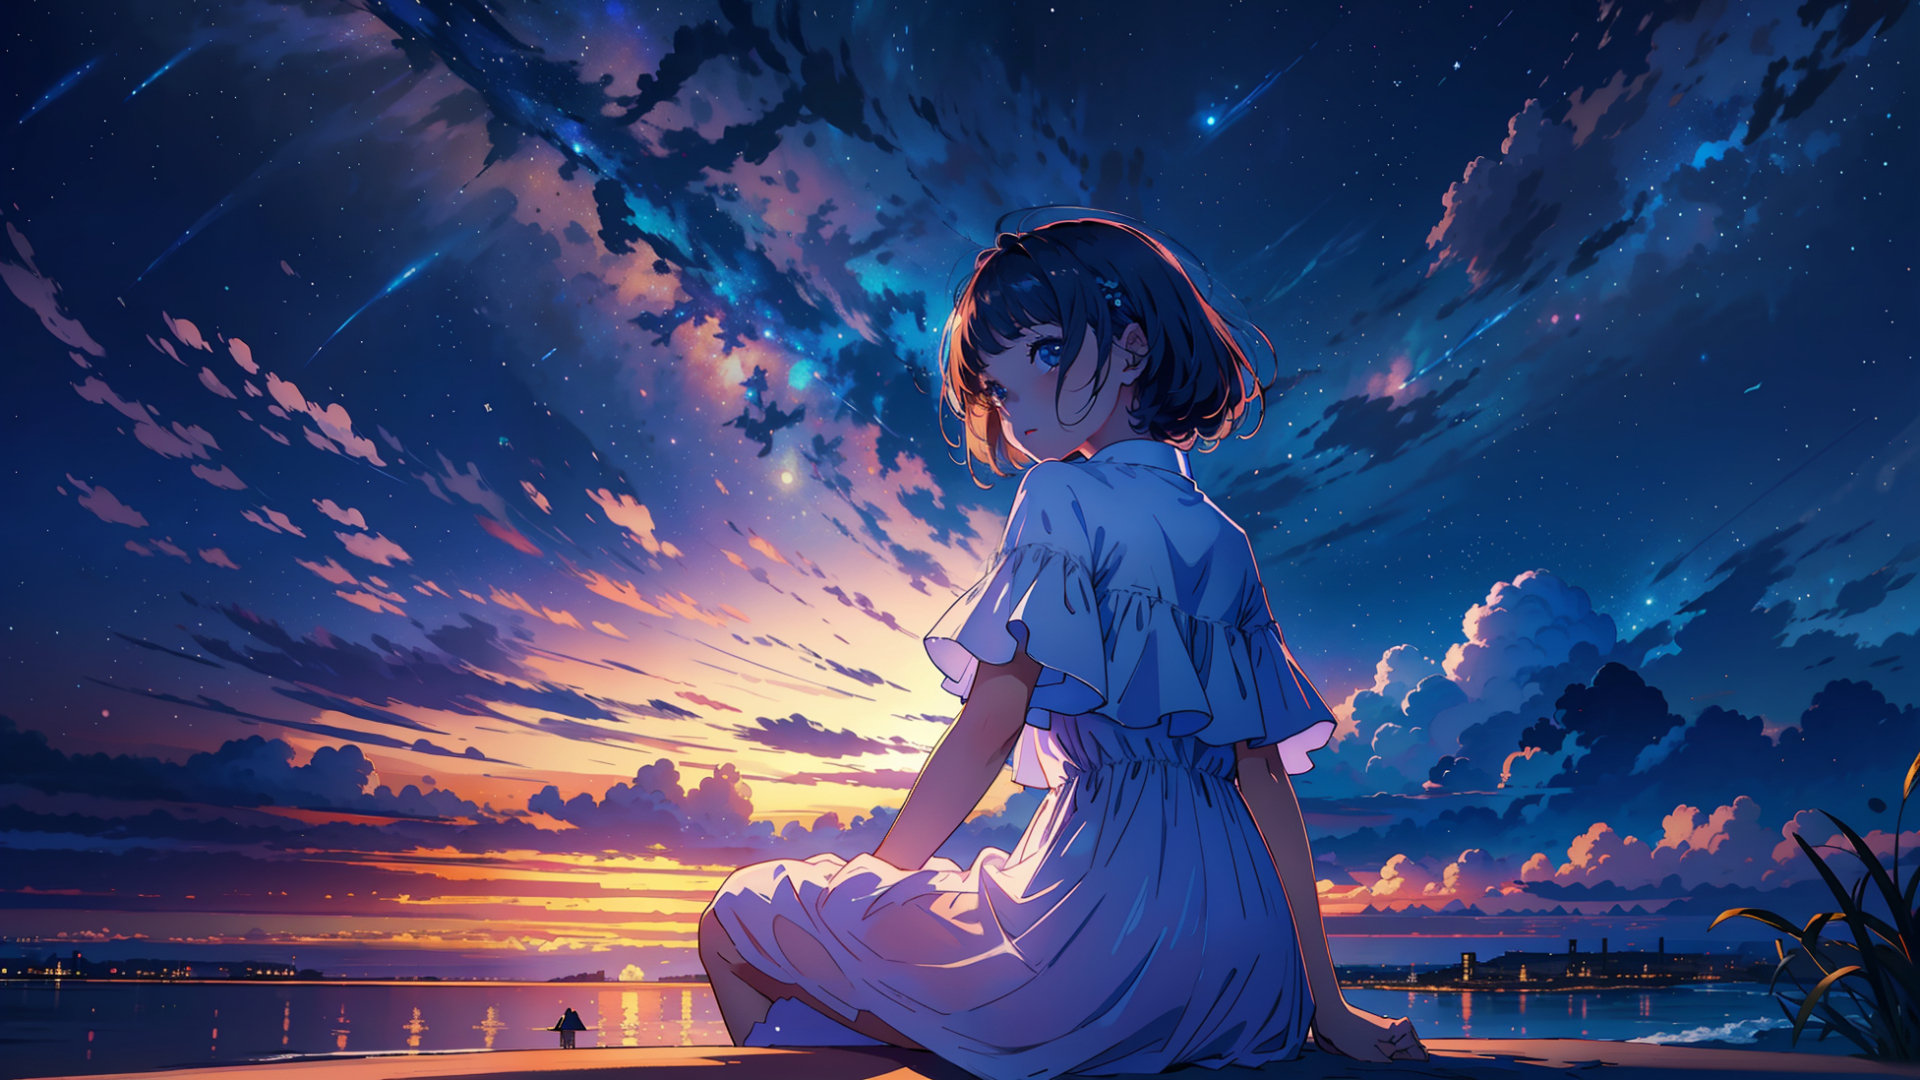 1920x1080 Resolution Anime Girl Enjoying Sunset 1080p Laptop Full Hd Wallpaper Wallpapers Den